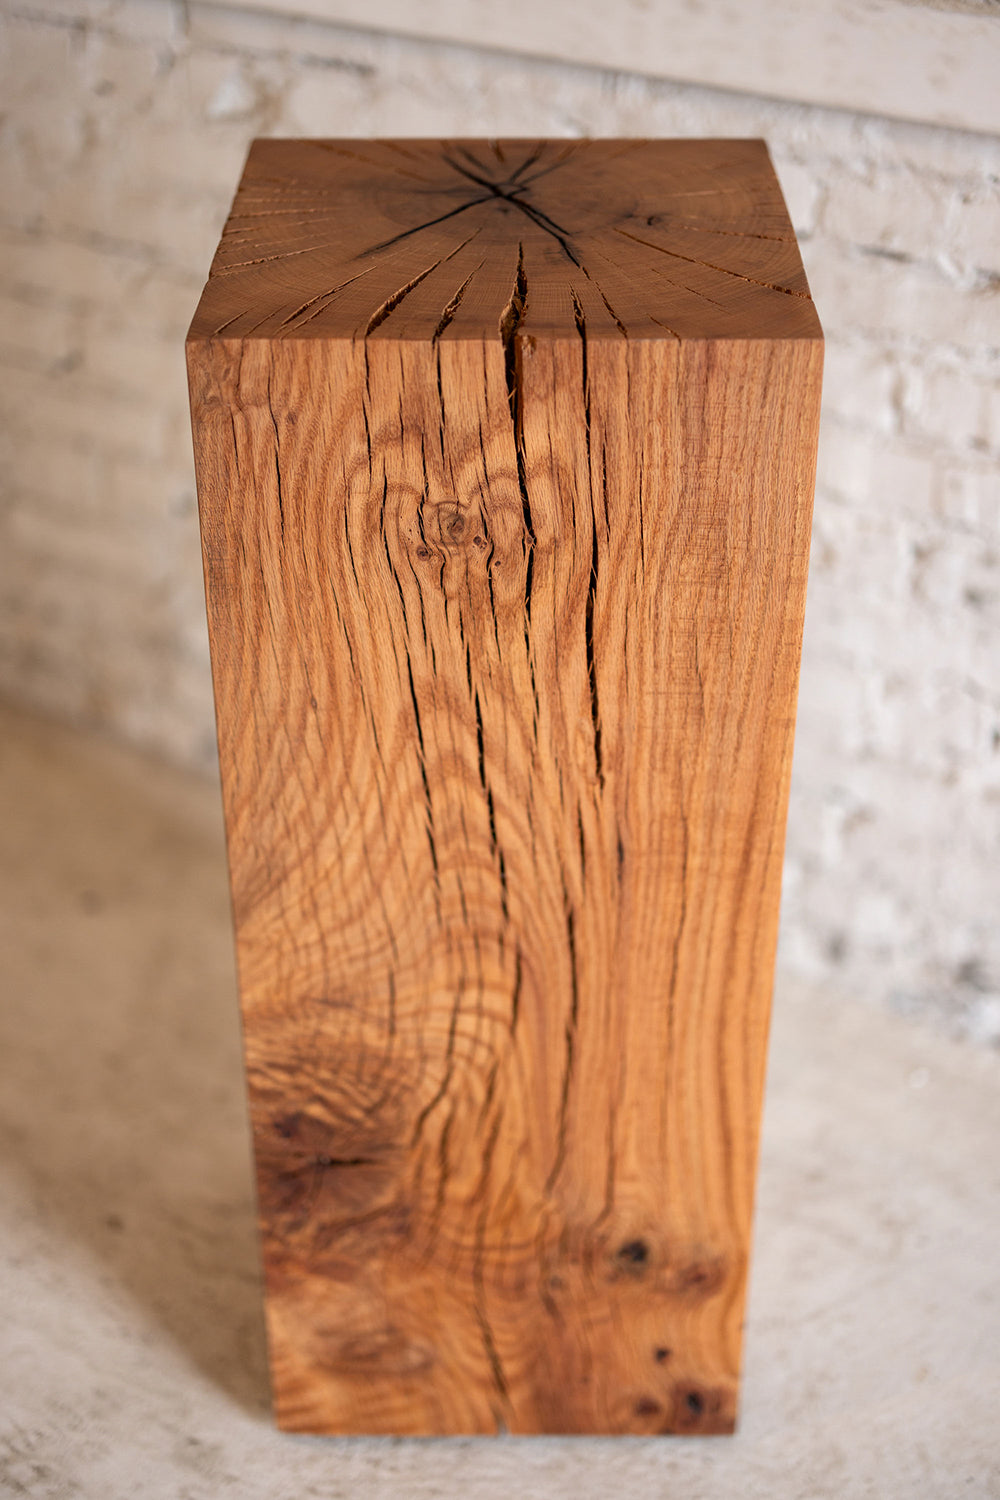 Le Boit | Solid Wood Cube Pedestal Red Oak  36" H Art Sculpture